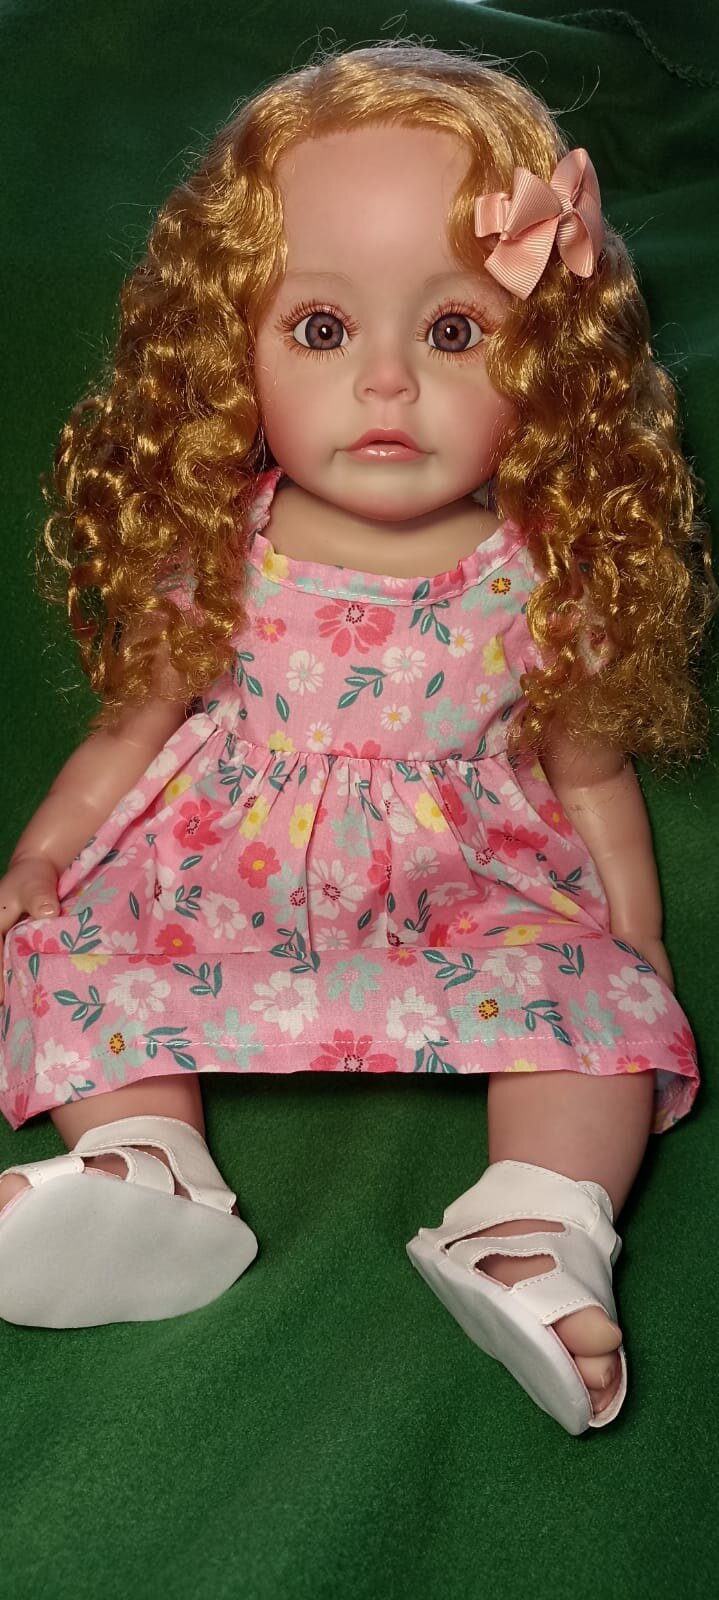 Кукла реборн виниловая 55 см, можно купать. Кукла Reborn в розовом платье.